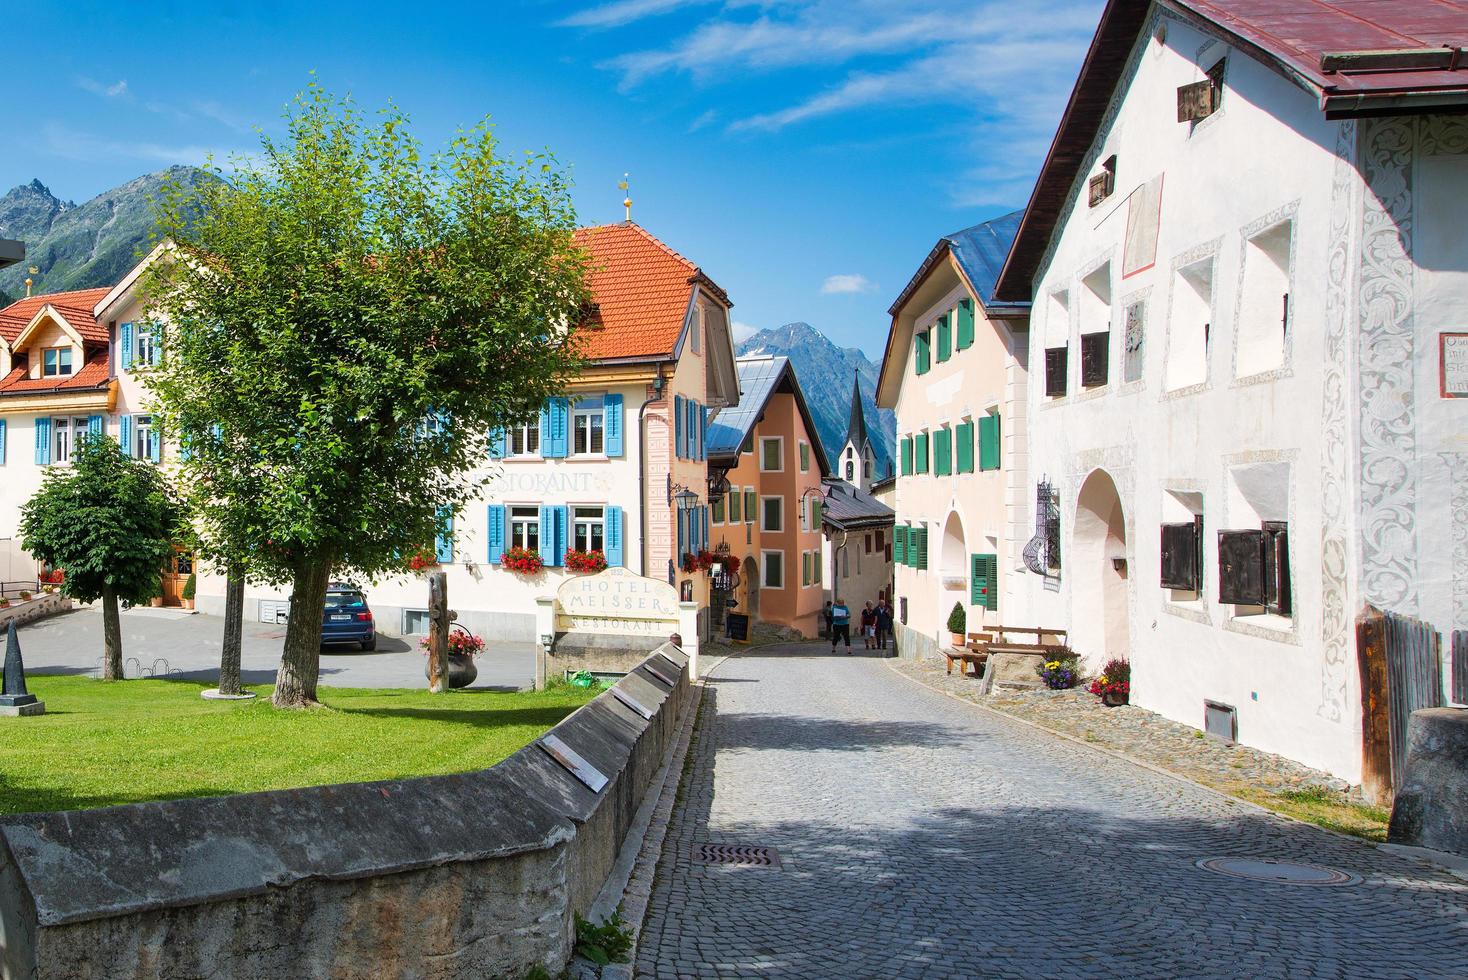 petite rue de maisons dans le village alpin suisse photo